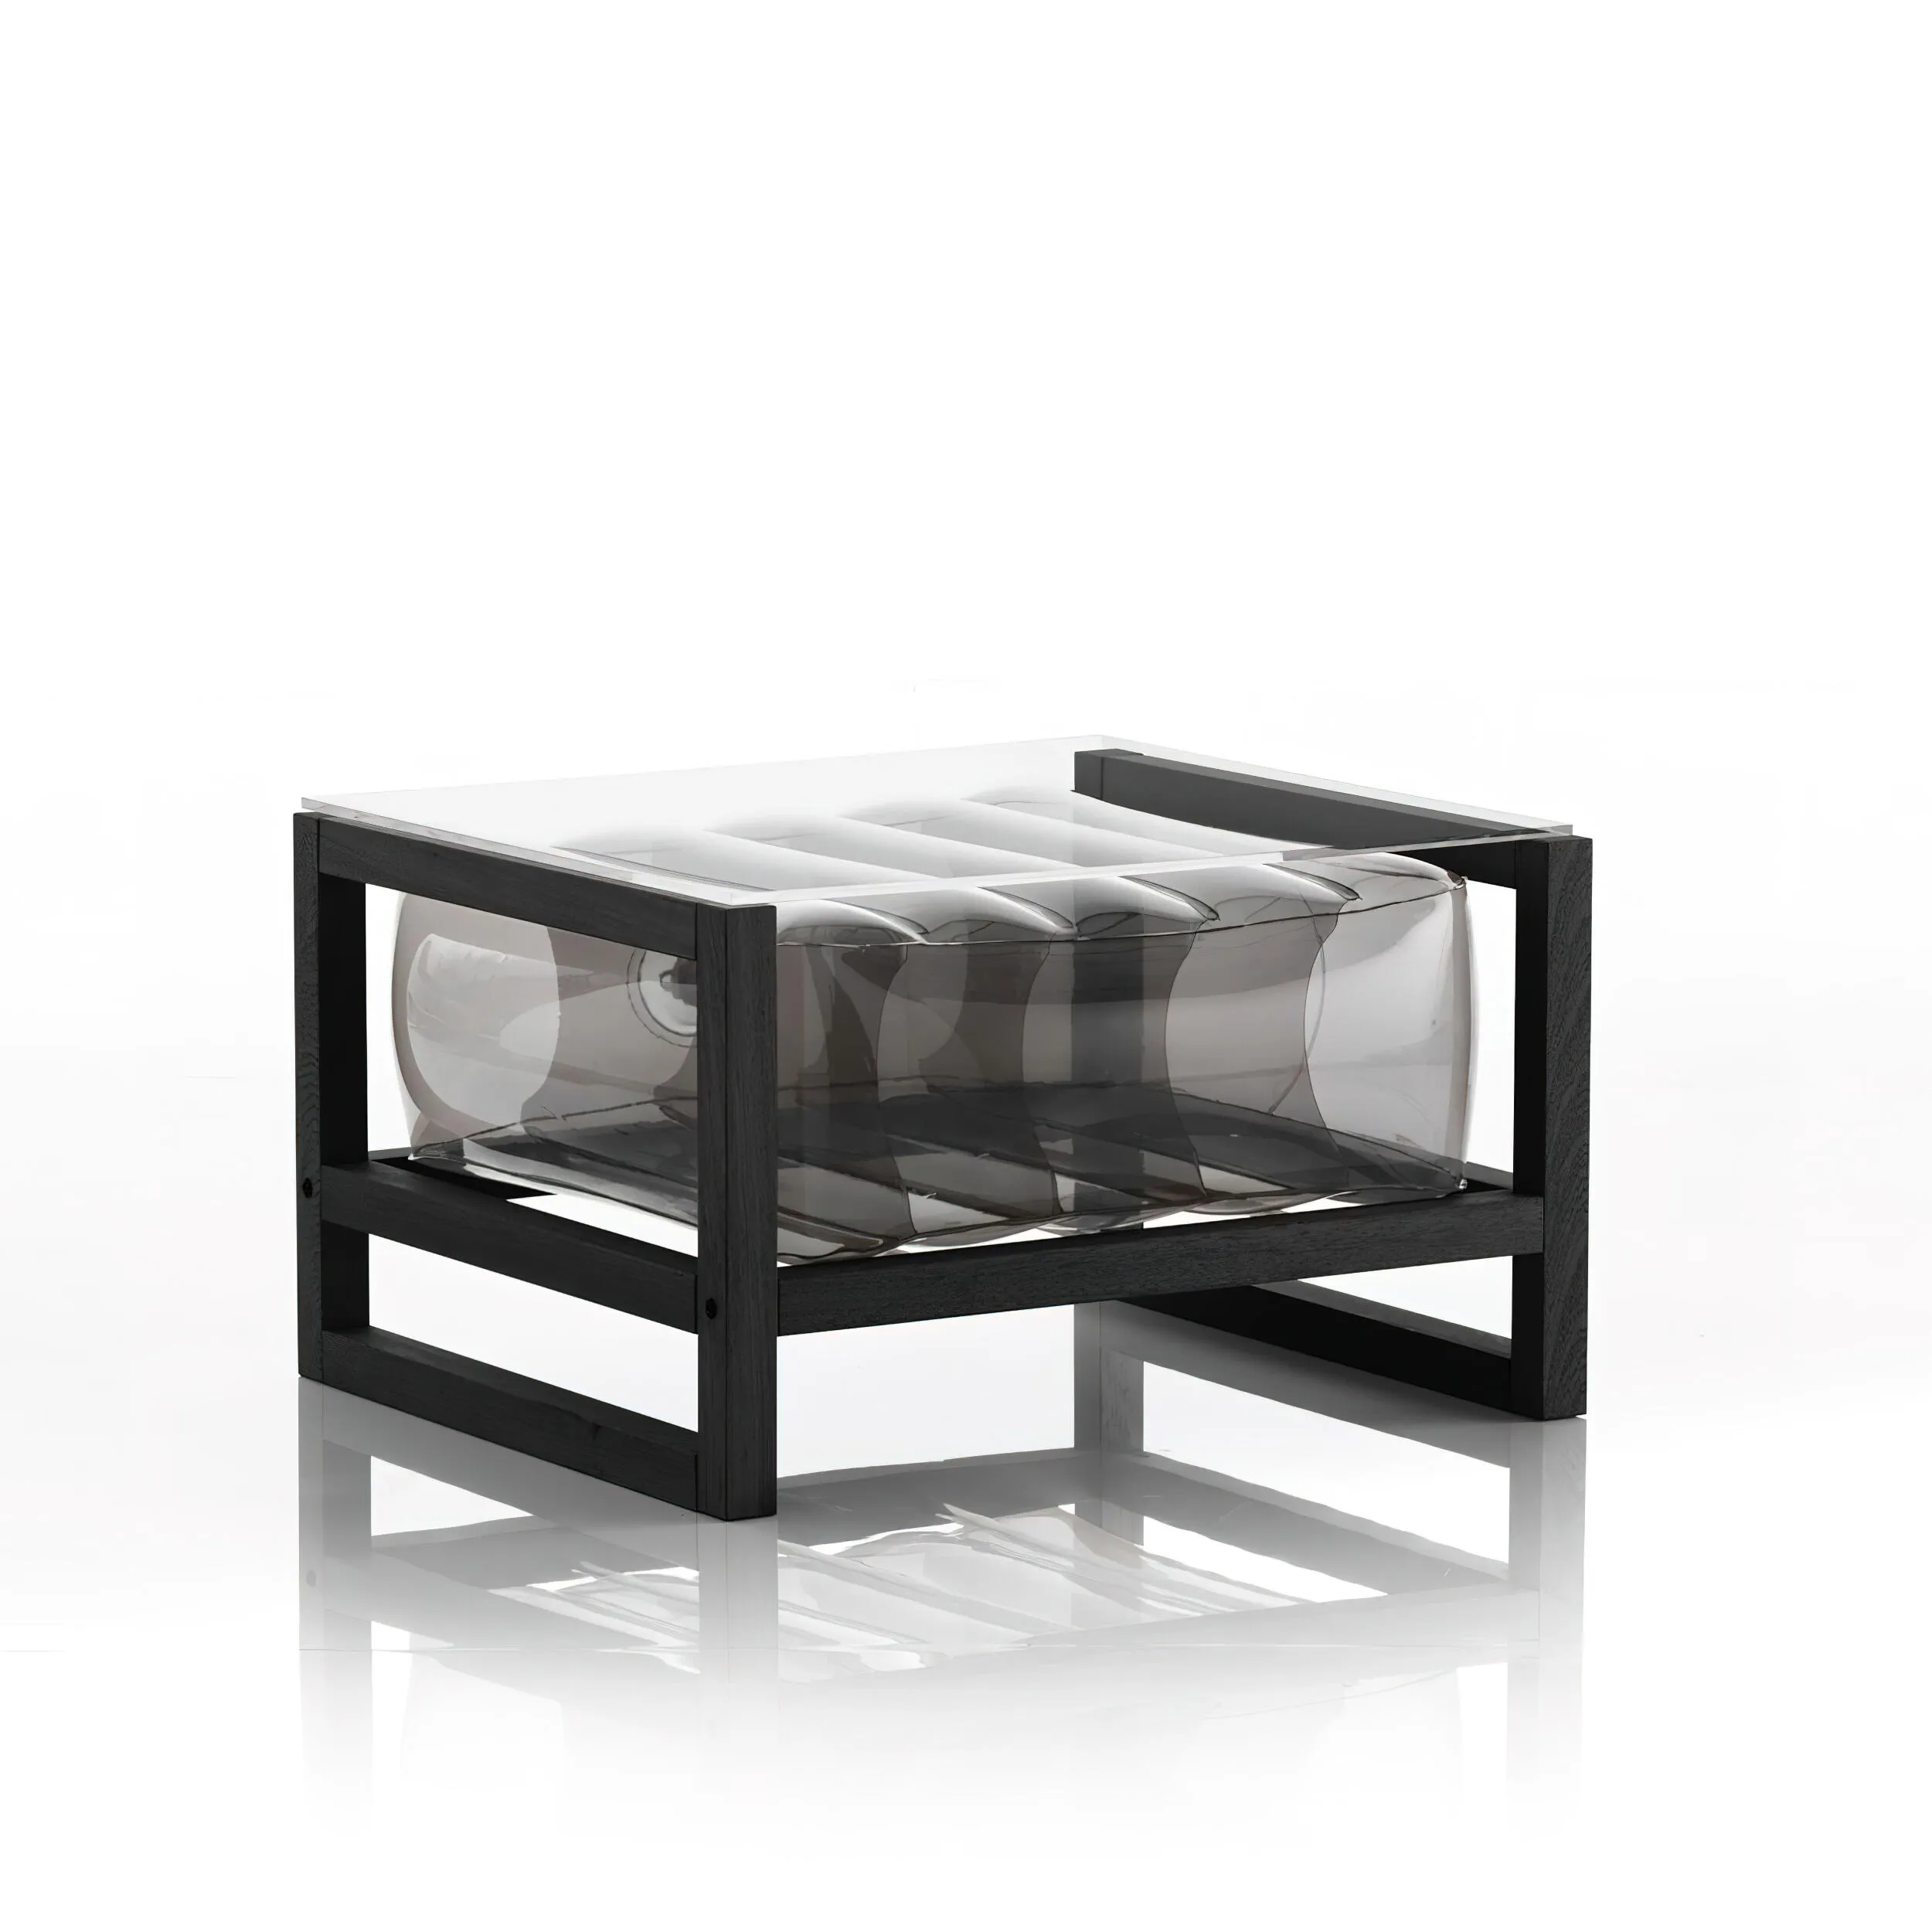 tavolino da salotto Yoko eko struttura in legno nero, dimensioni 62x70xH40 cm peso 14 kg, seduta gonfiabile in TPU colore nero